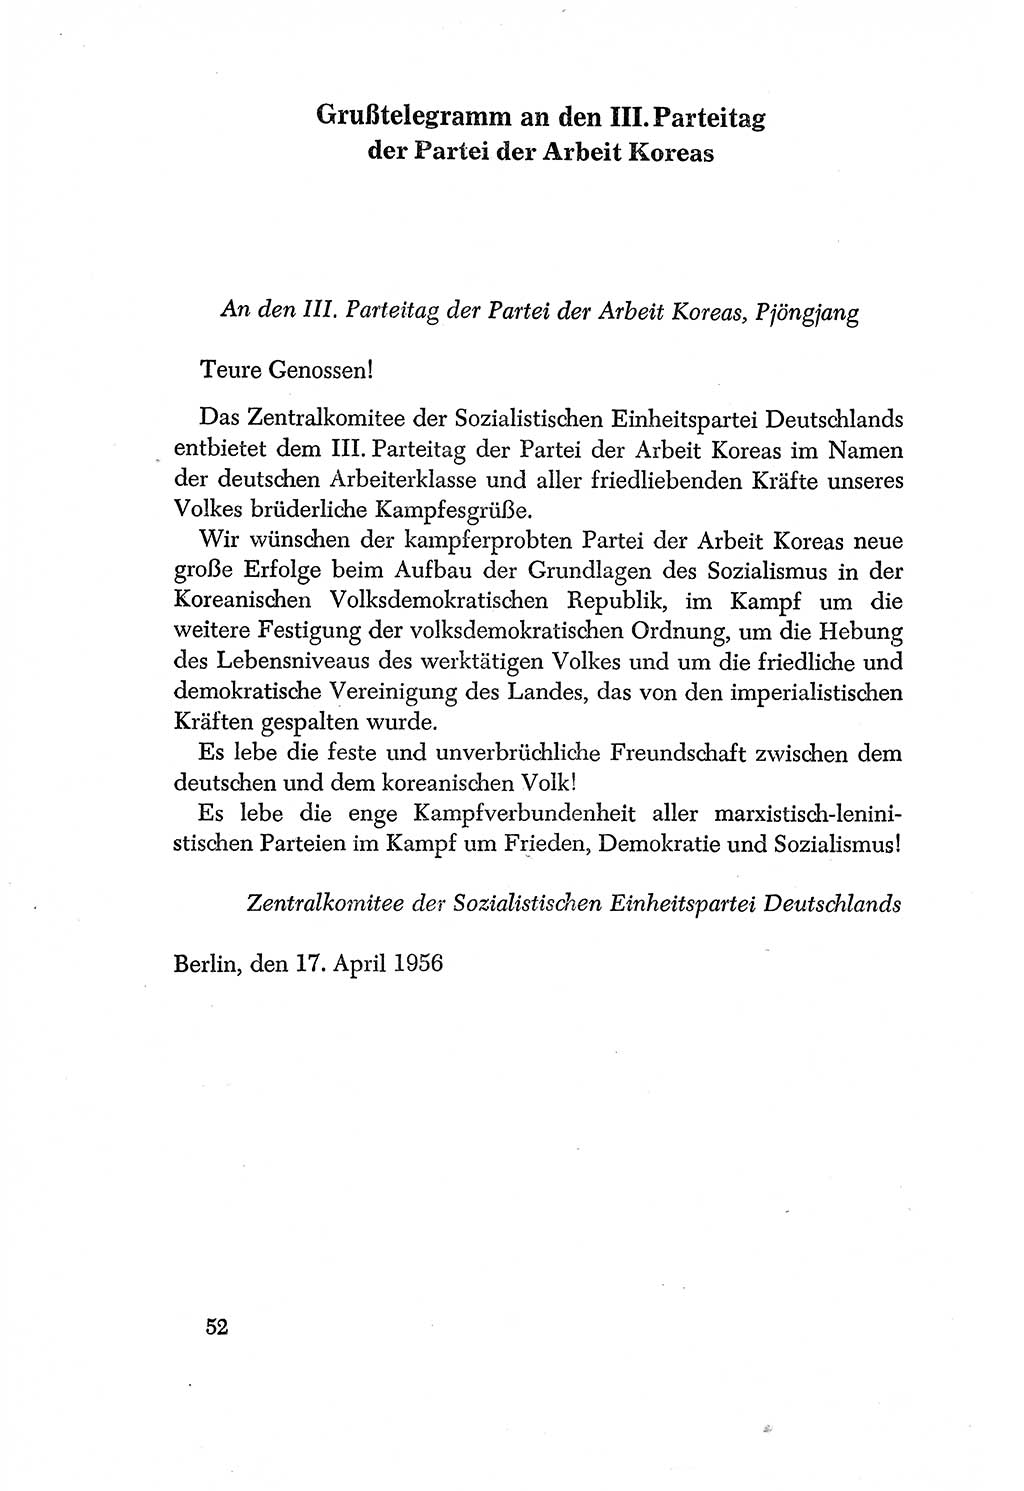 Dokumente der Sozialistischen Einheitspartei Deutschlands (SED) [Deutsche Demokratische Republik (DDR)] 1956-1957, Seite 52 (Dok. SED DDR 1956-1957, S. 52)